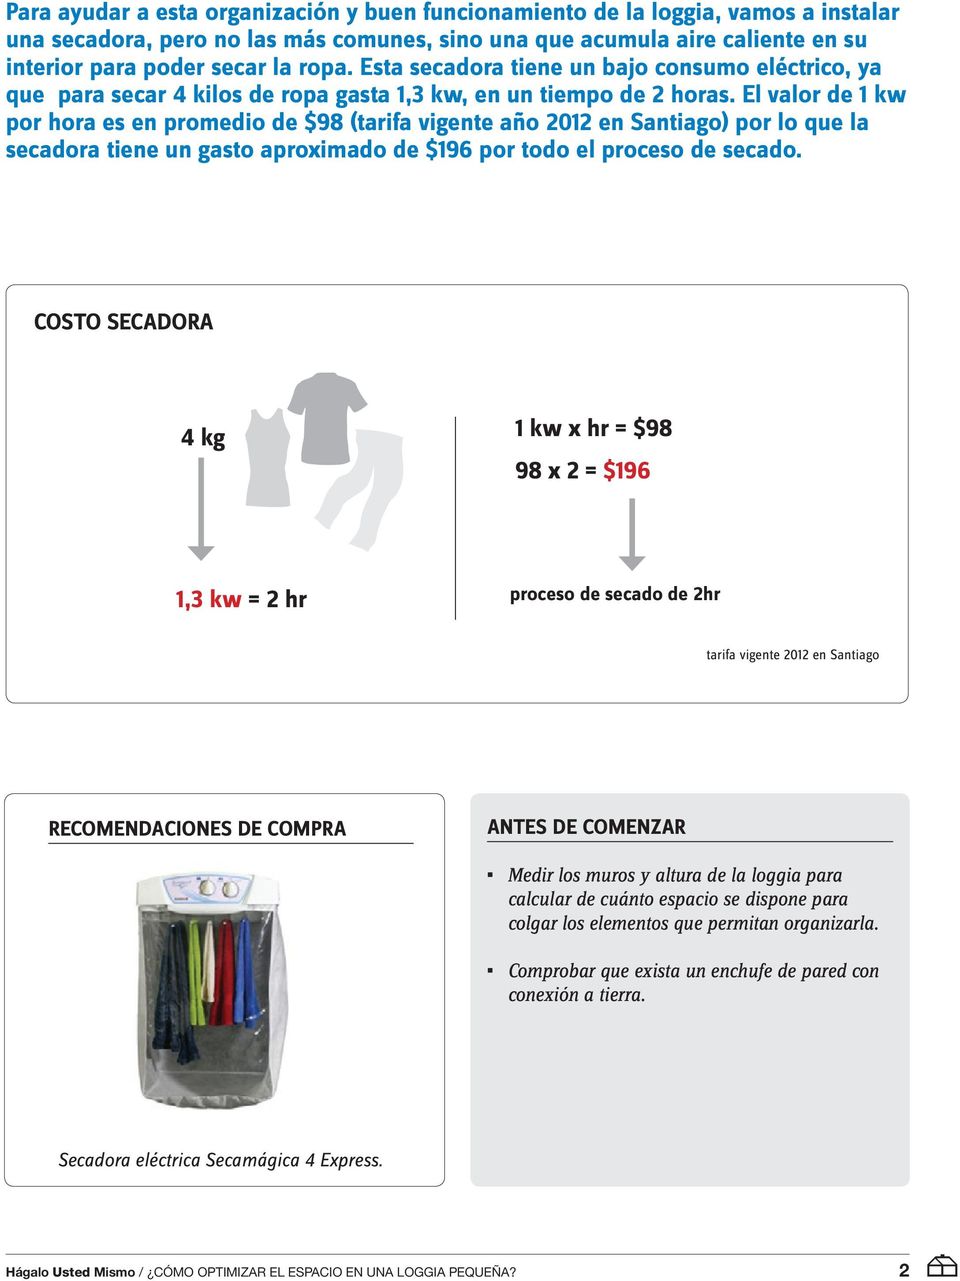 El valor de 1 kw por hora es en promedio de $98 (tarifa vigente año 2012 en Santiago) por lo que la secadora tiene un gasto aproximado de $196 por todo el proceso de secado.